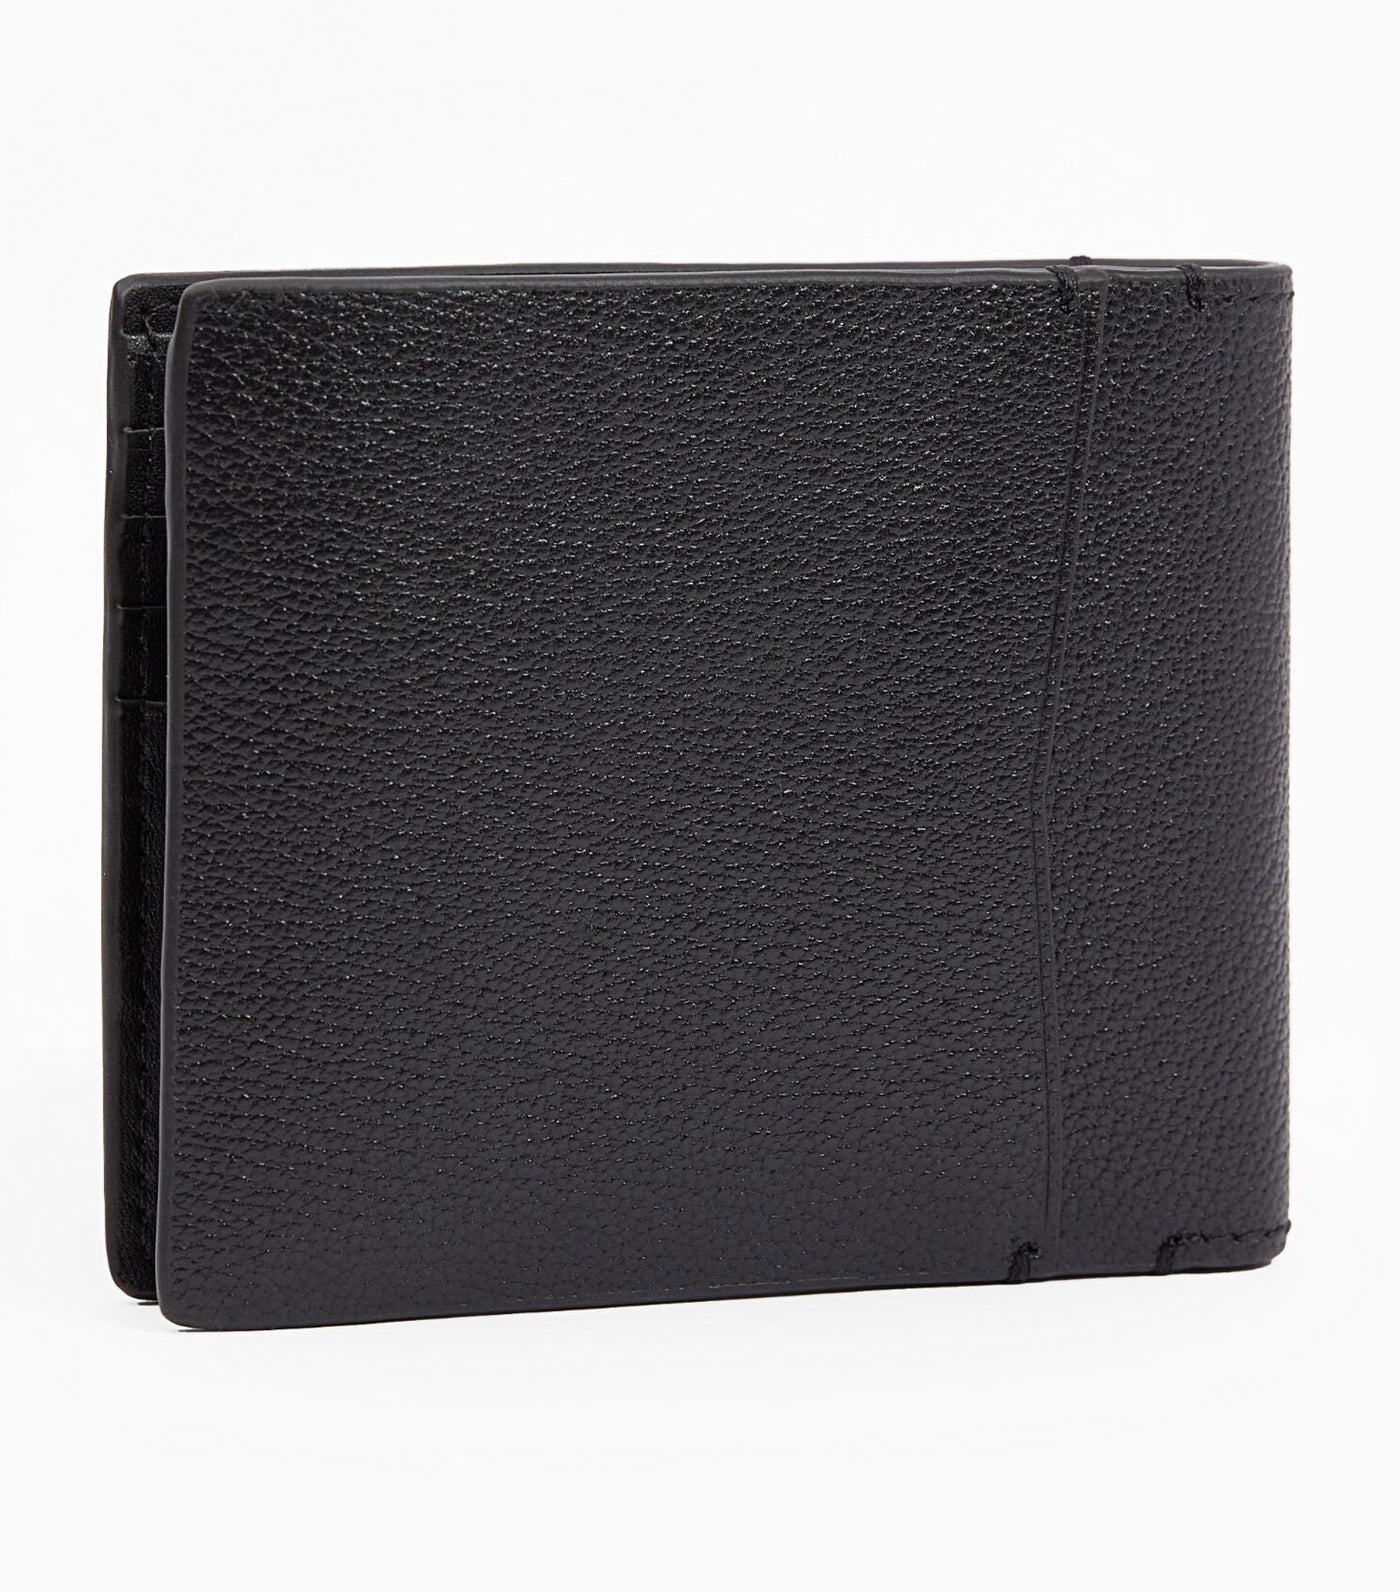 Leather RFID Slimfold Wallet Black